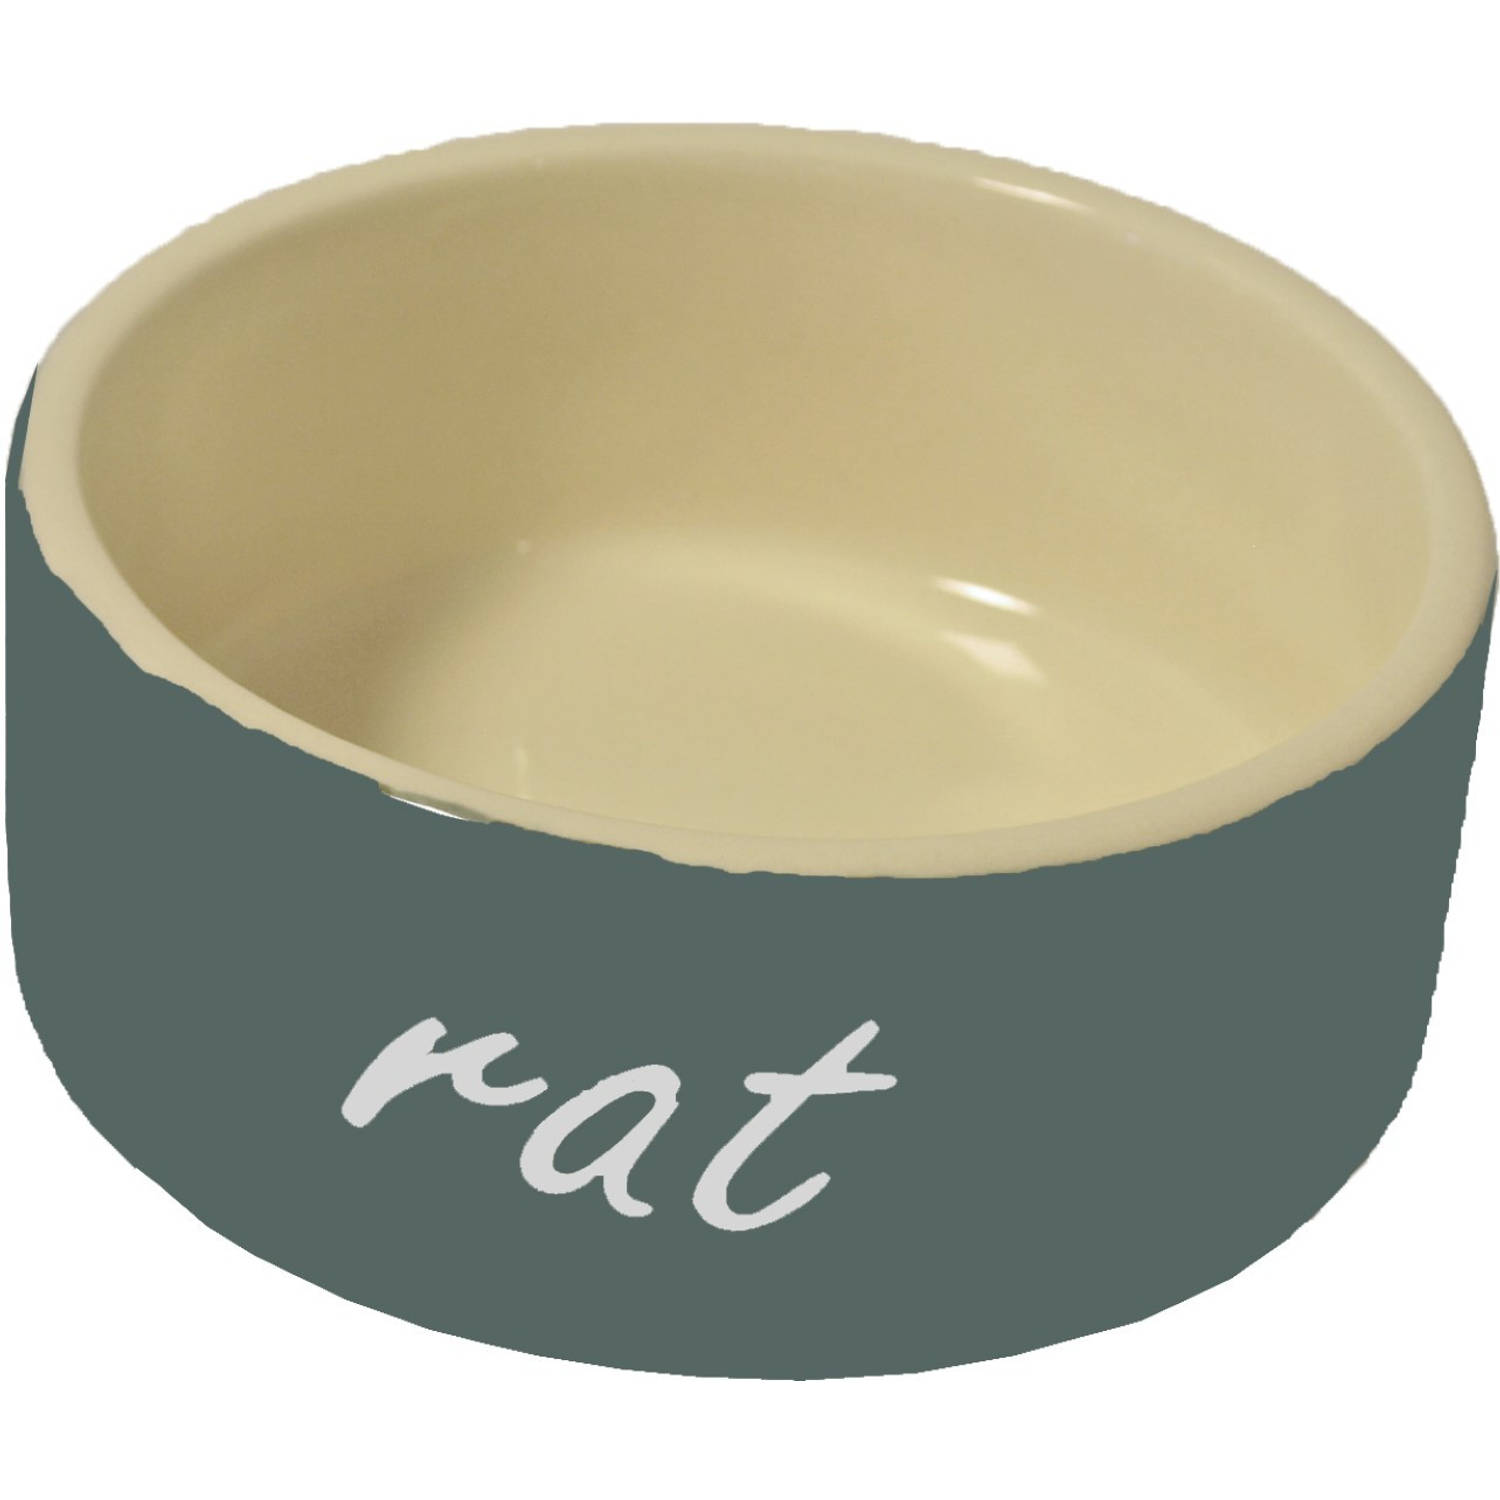 Ratten eetbak steen grijs diameter 10 cm